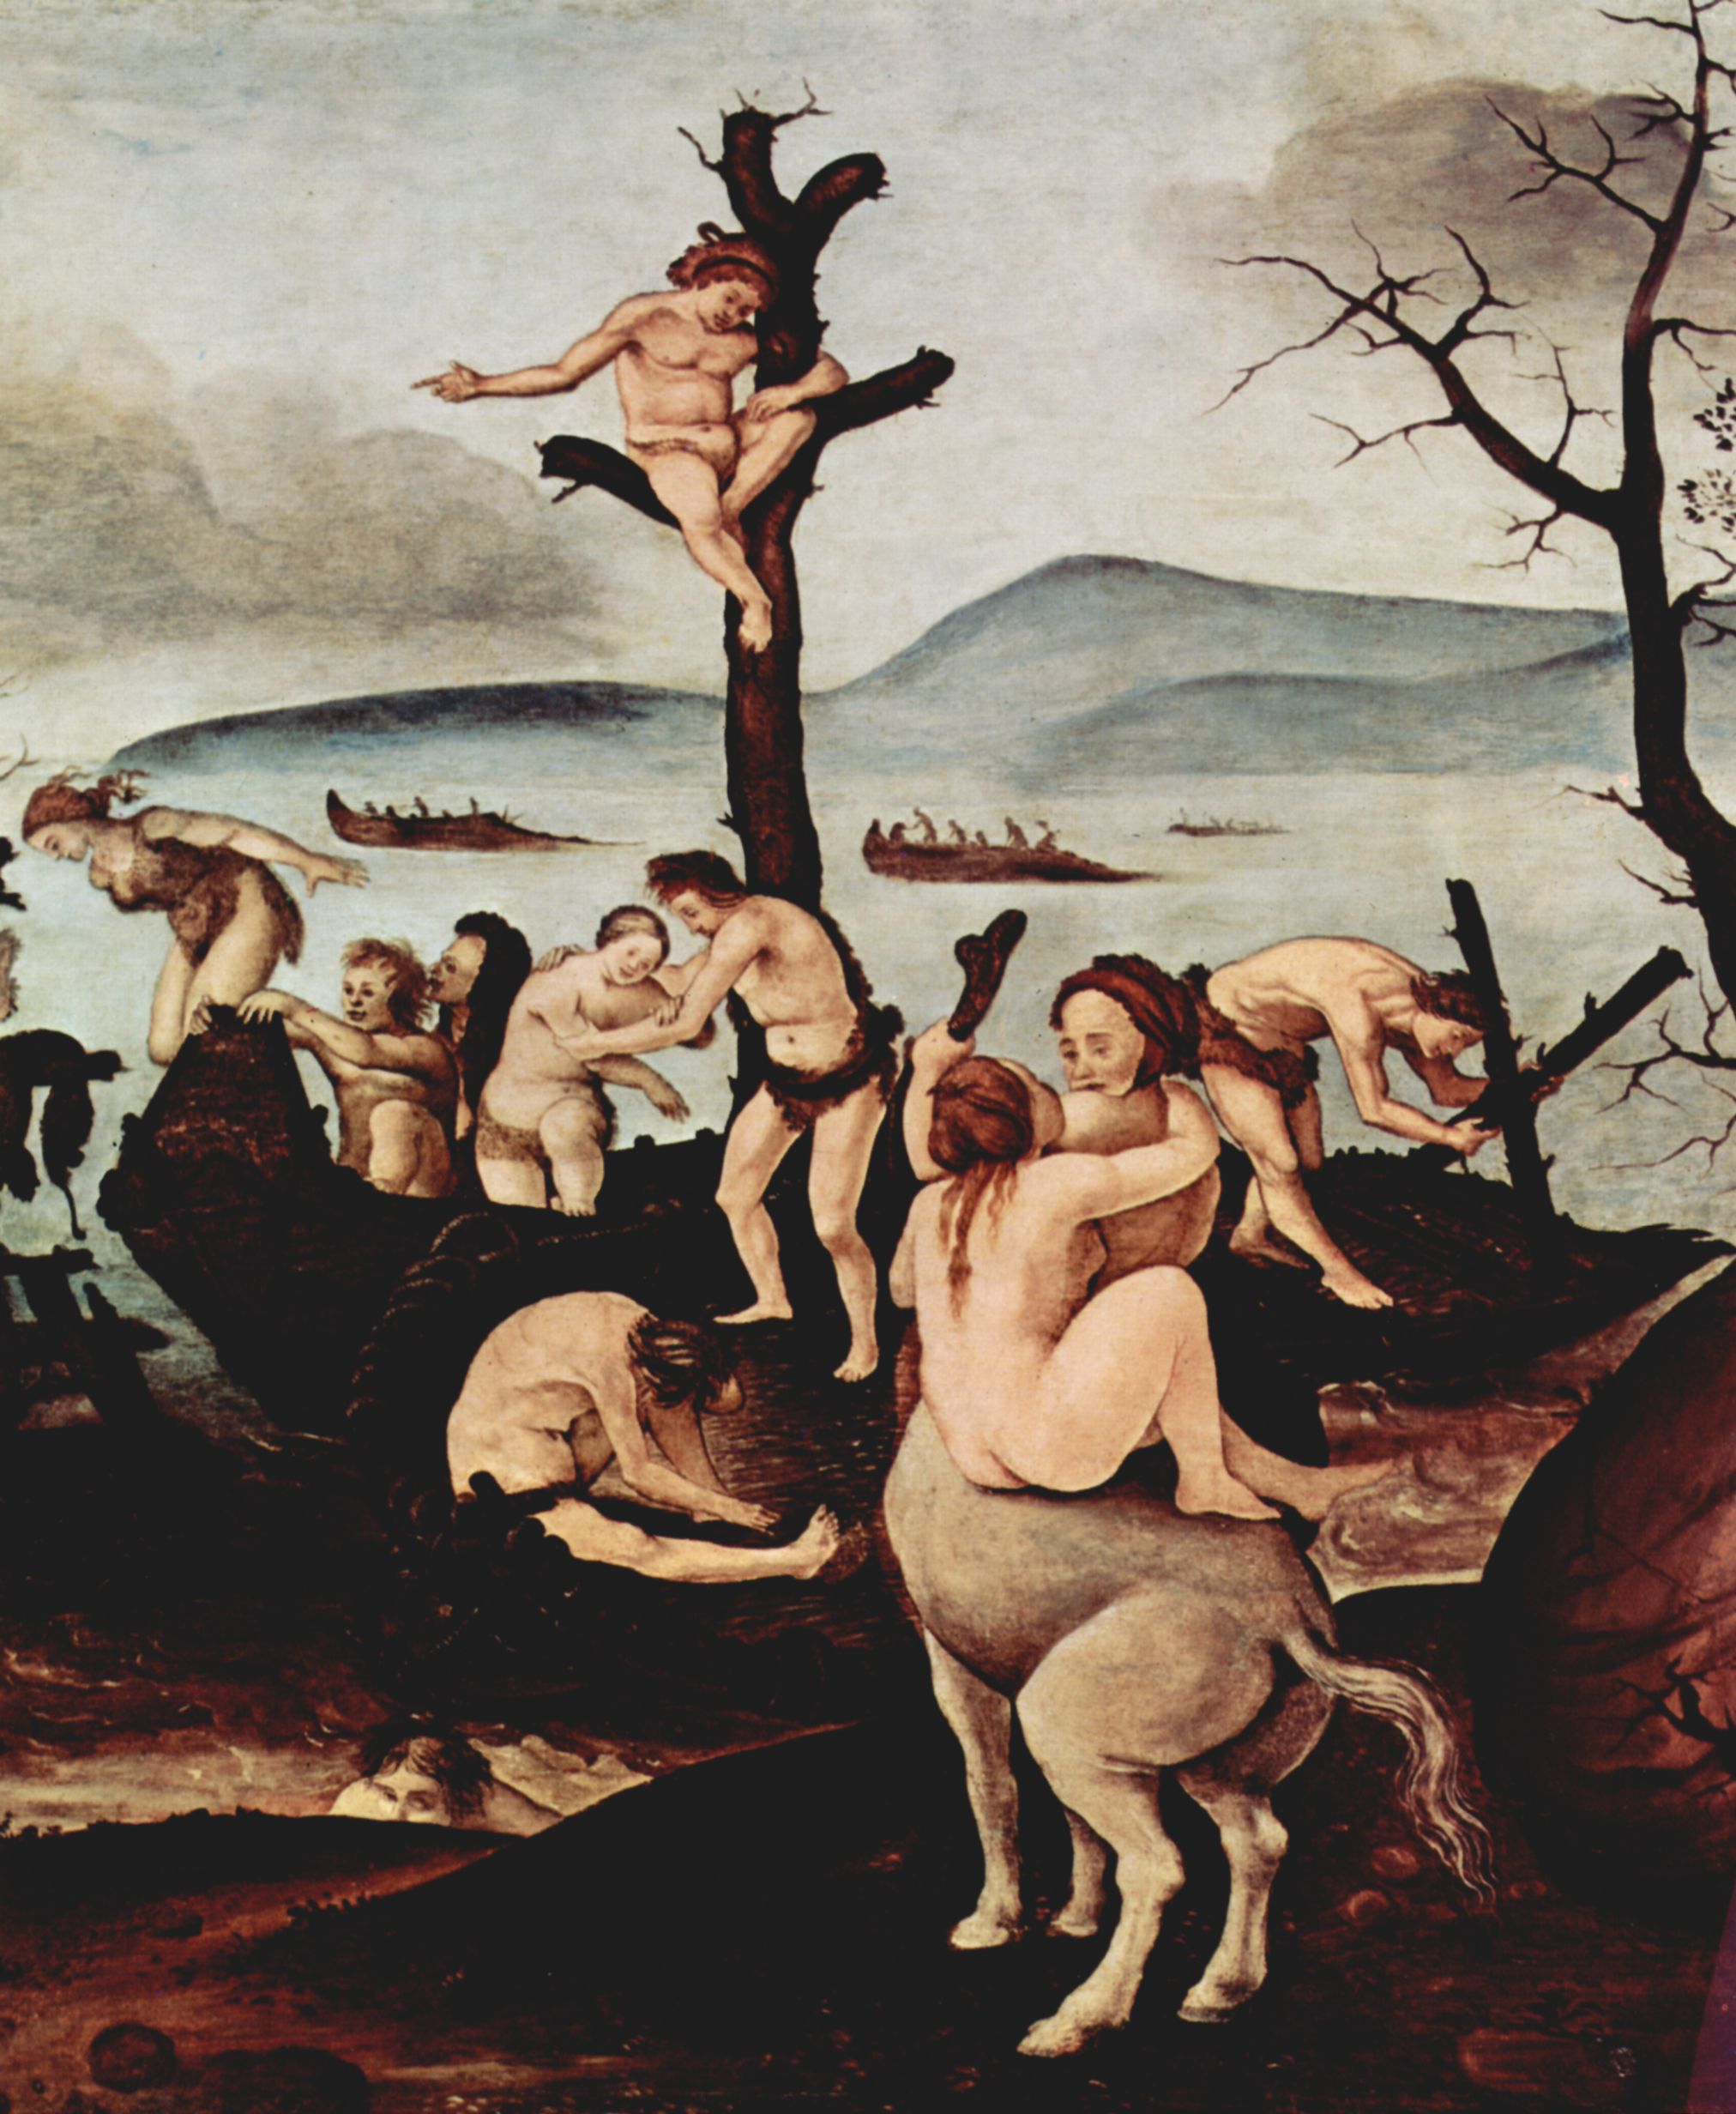 Piero di Cosimo: Bildfolge zur Frhgeschichte der Menschheit, Szene: Rckkehr von der Jagd, Detail